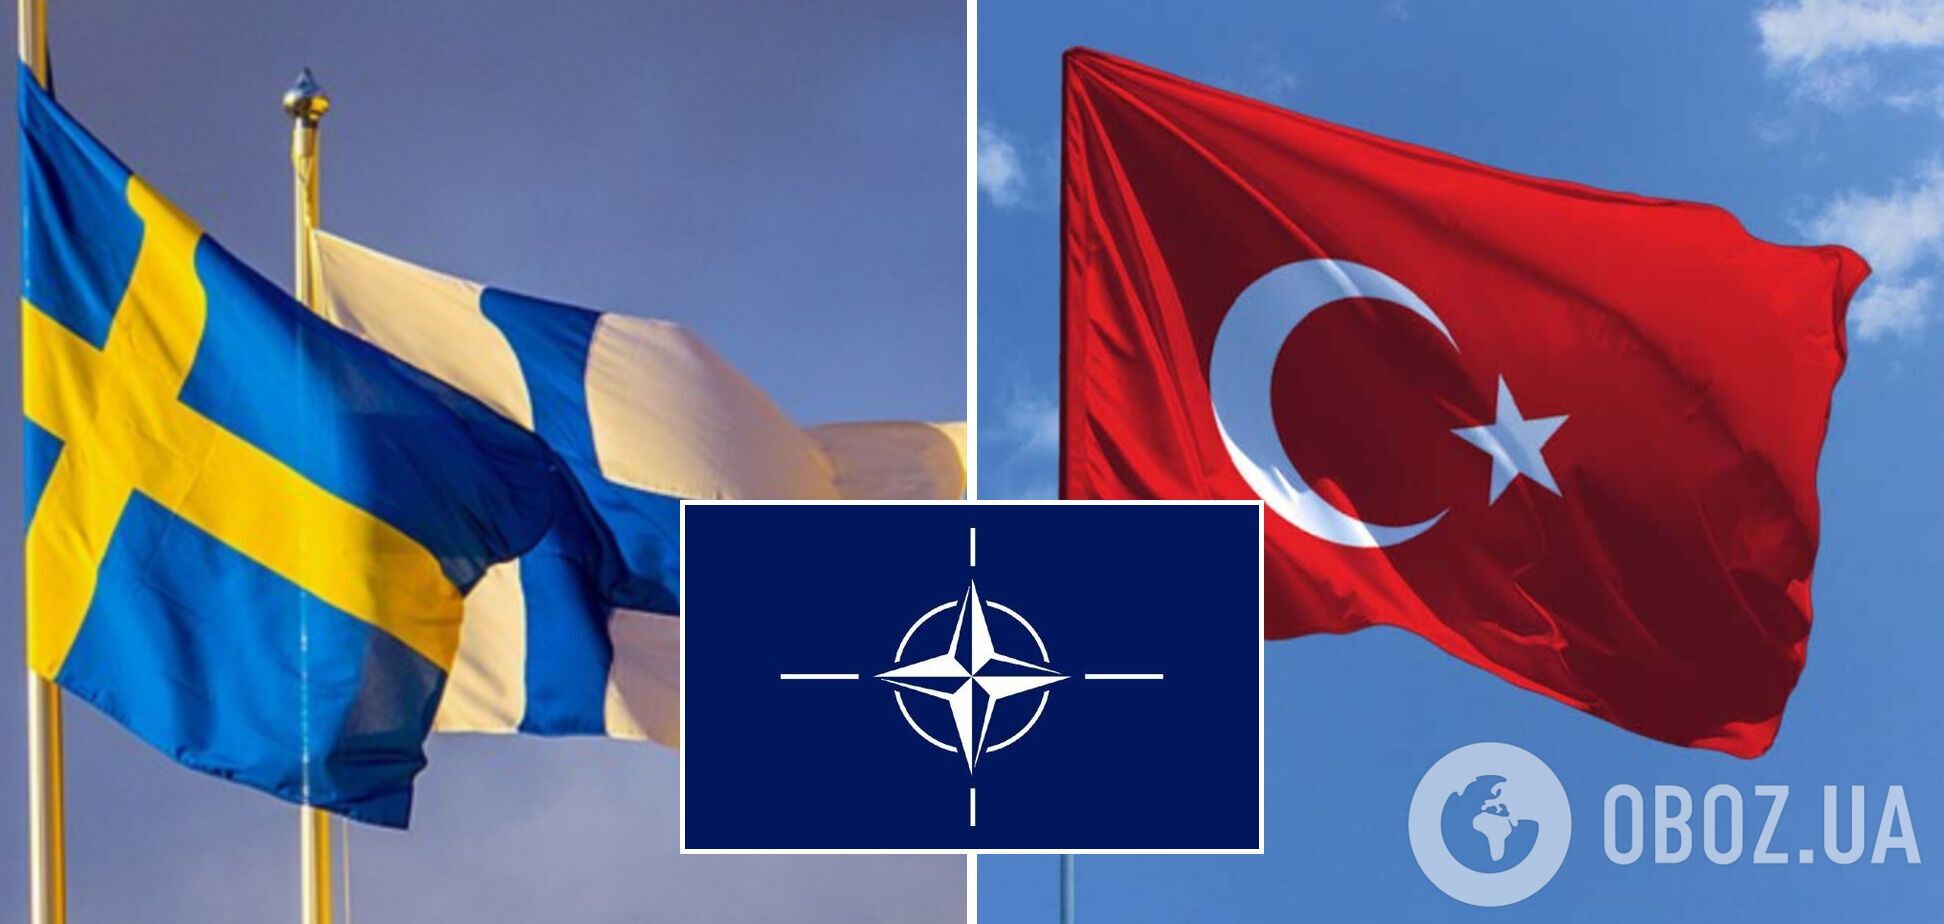 Финляндия, Швеция и Турция подписали Меморандум о взаимопонимании между странами